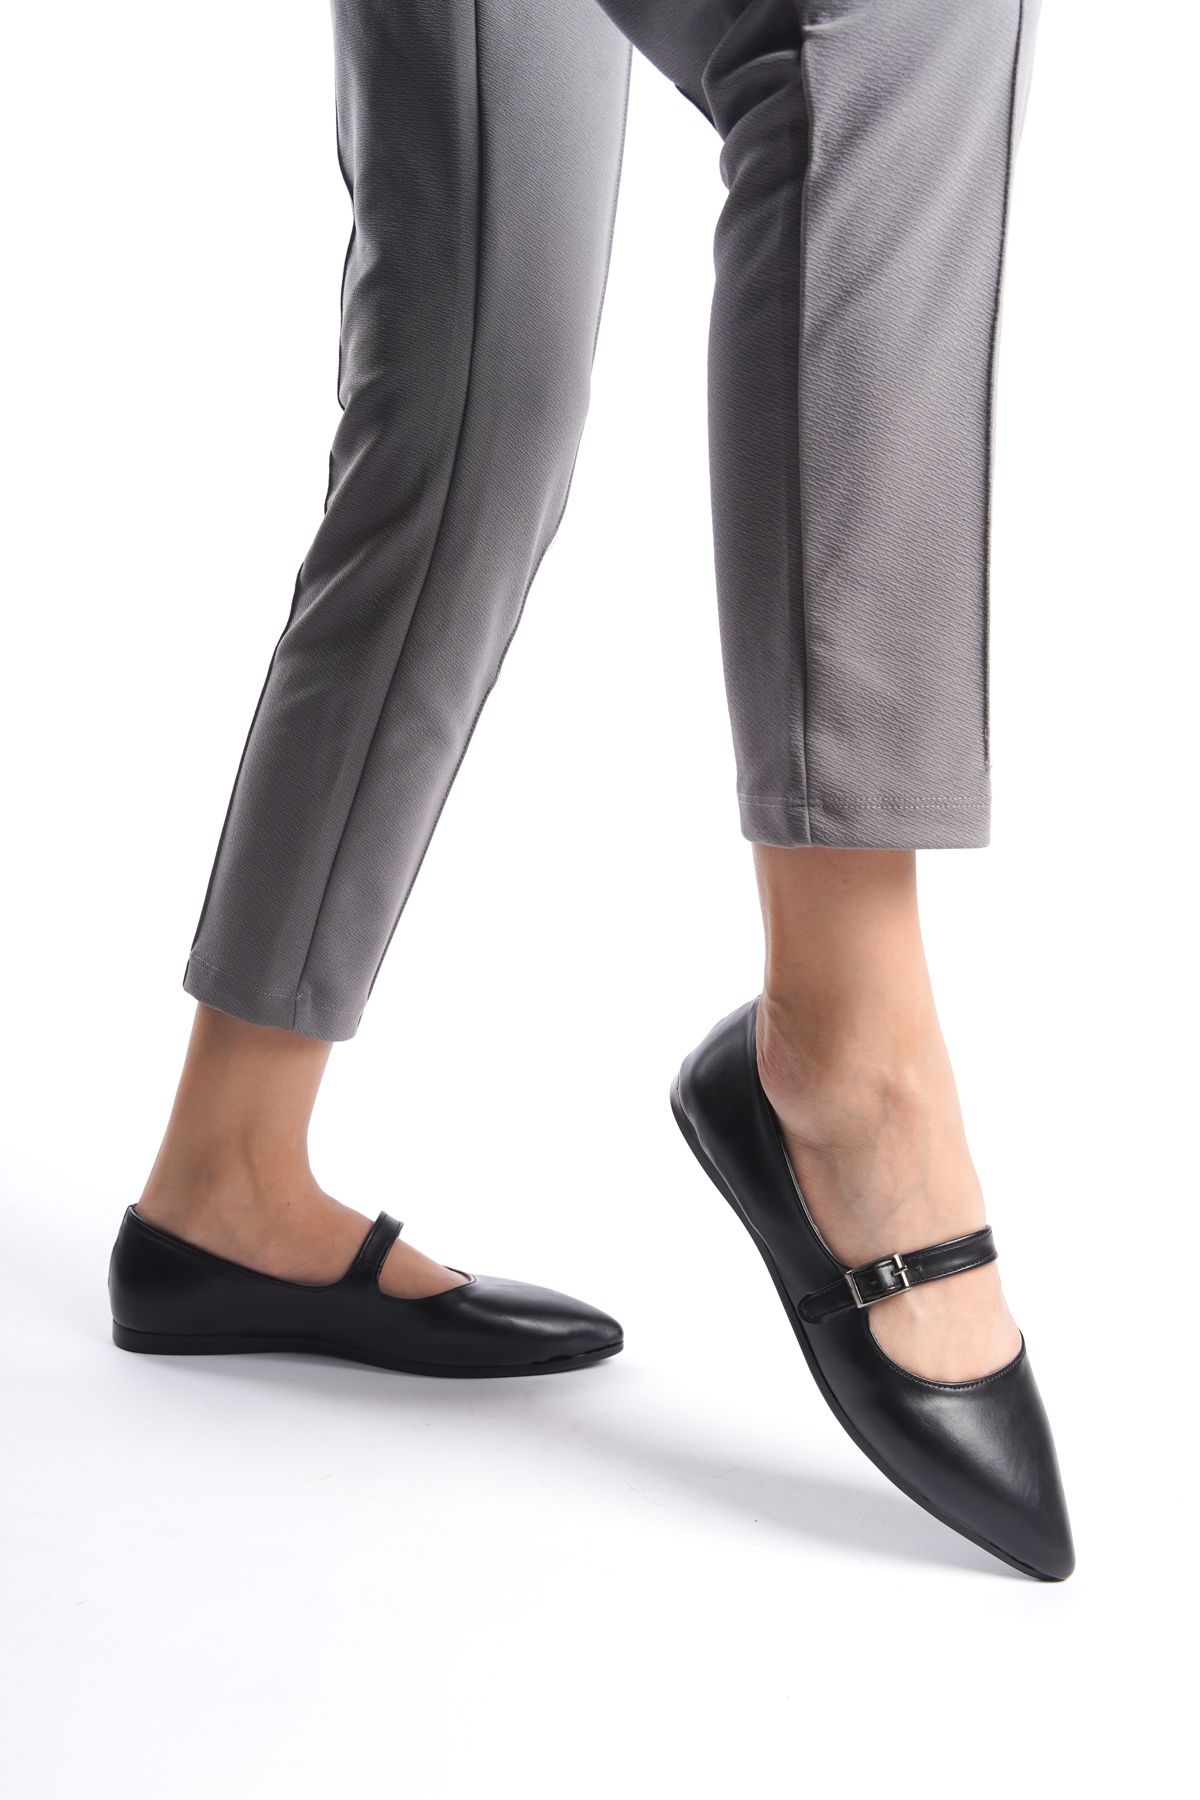 eformoda by emre yılmaz Siyah Kadın Günlük Rahat Tokalı Casual Klasik Ayakkabı Babet DLP01